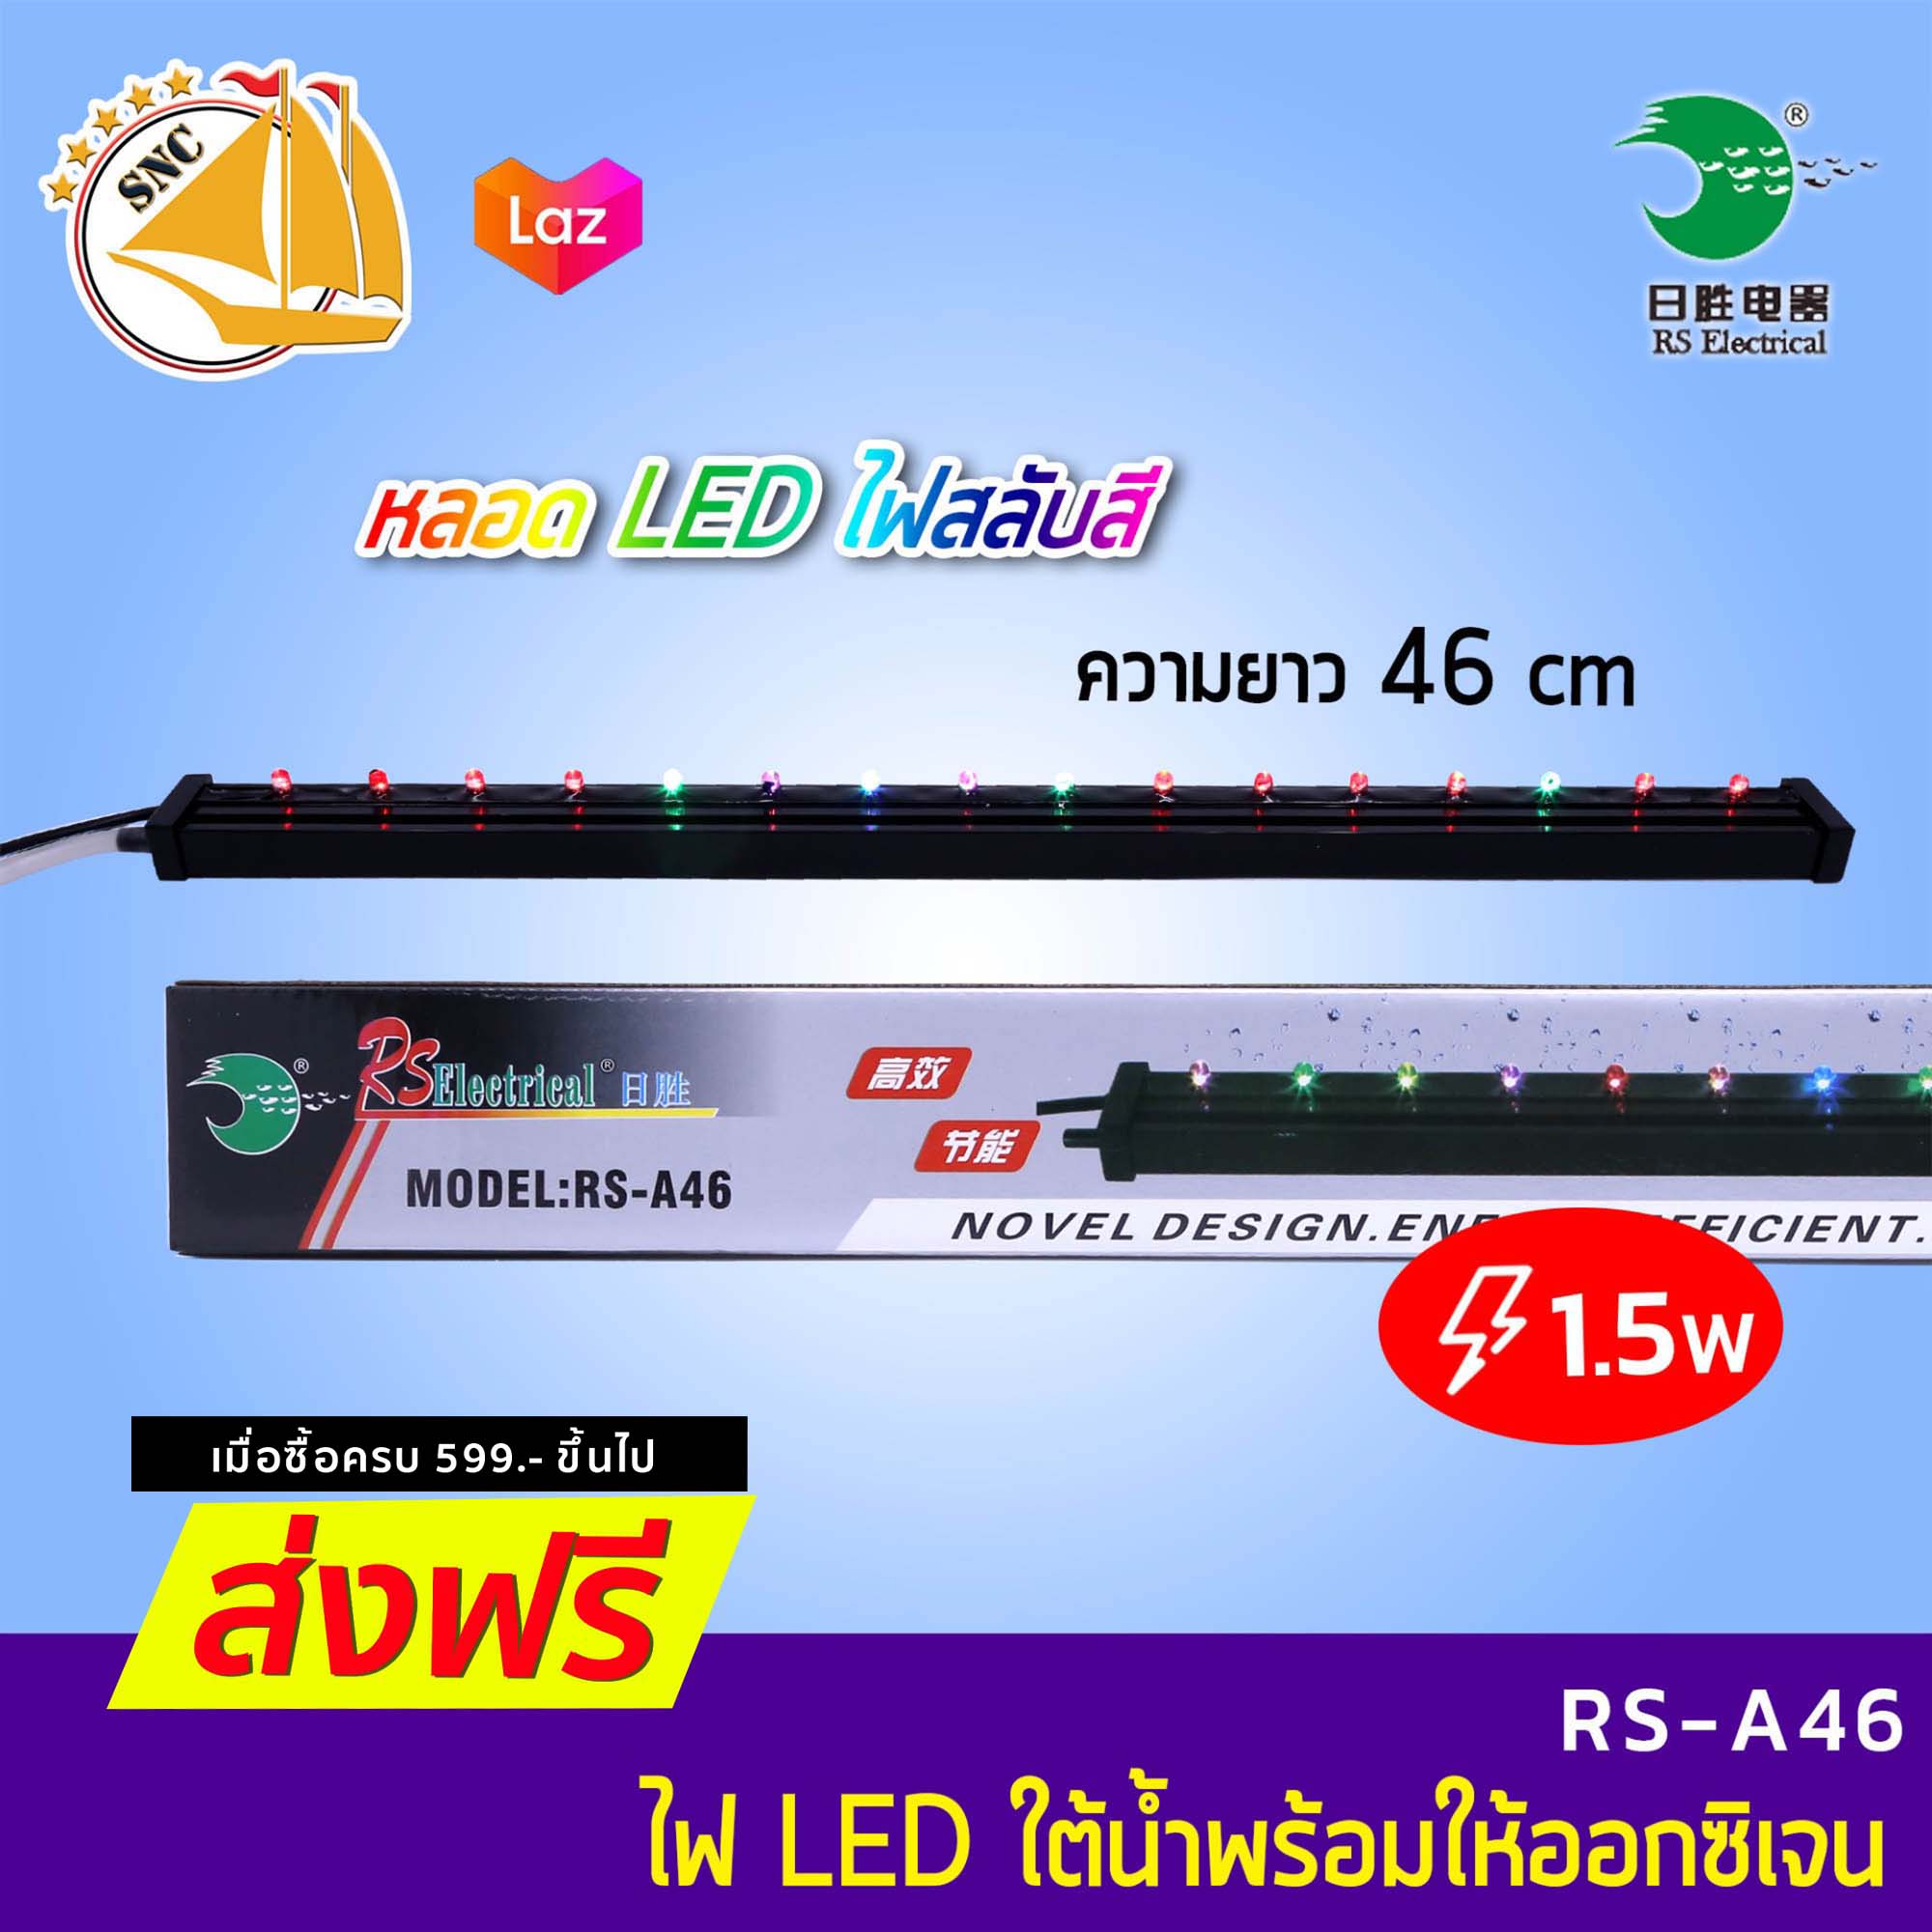 RS-A46 LED light & air stone LED หลอดไฟตู้ปลา พร้อมให้ออกซิเจน ความยาว 46cm